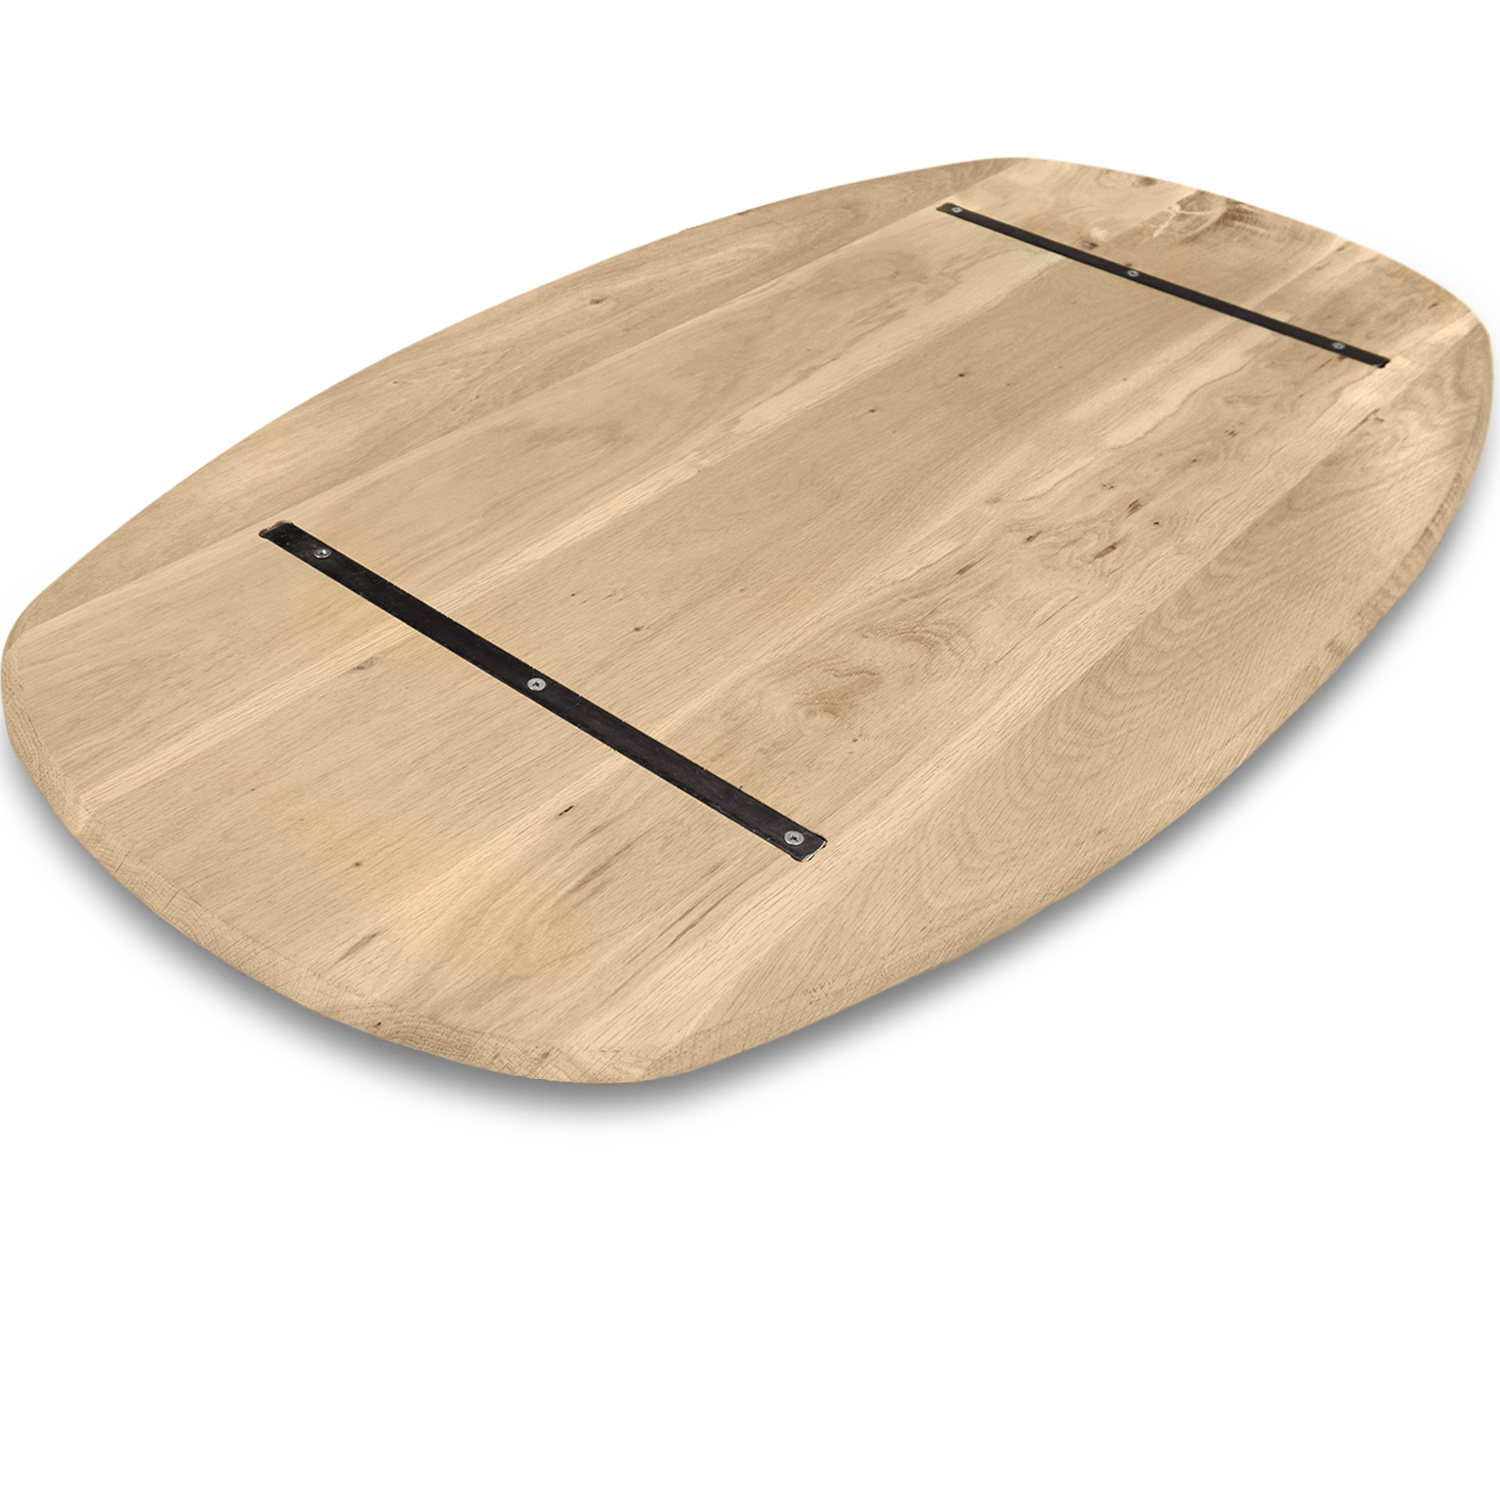  Tischplatte Wildeiche dänisch-oval nach Maß - 2,5 cm dick (1-Schicht) - XXL Lamellen (14-20 cm breit) - Asteiche (rustikal) - Bootsform - verleimt & künstlich getrocknet (HF 8-12%) - 40-117x80-247 cm